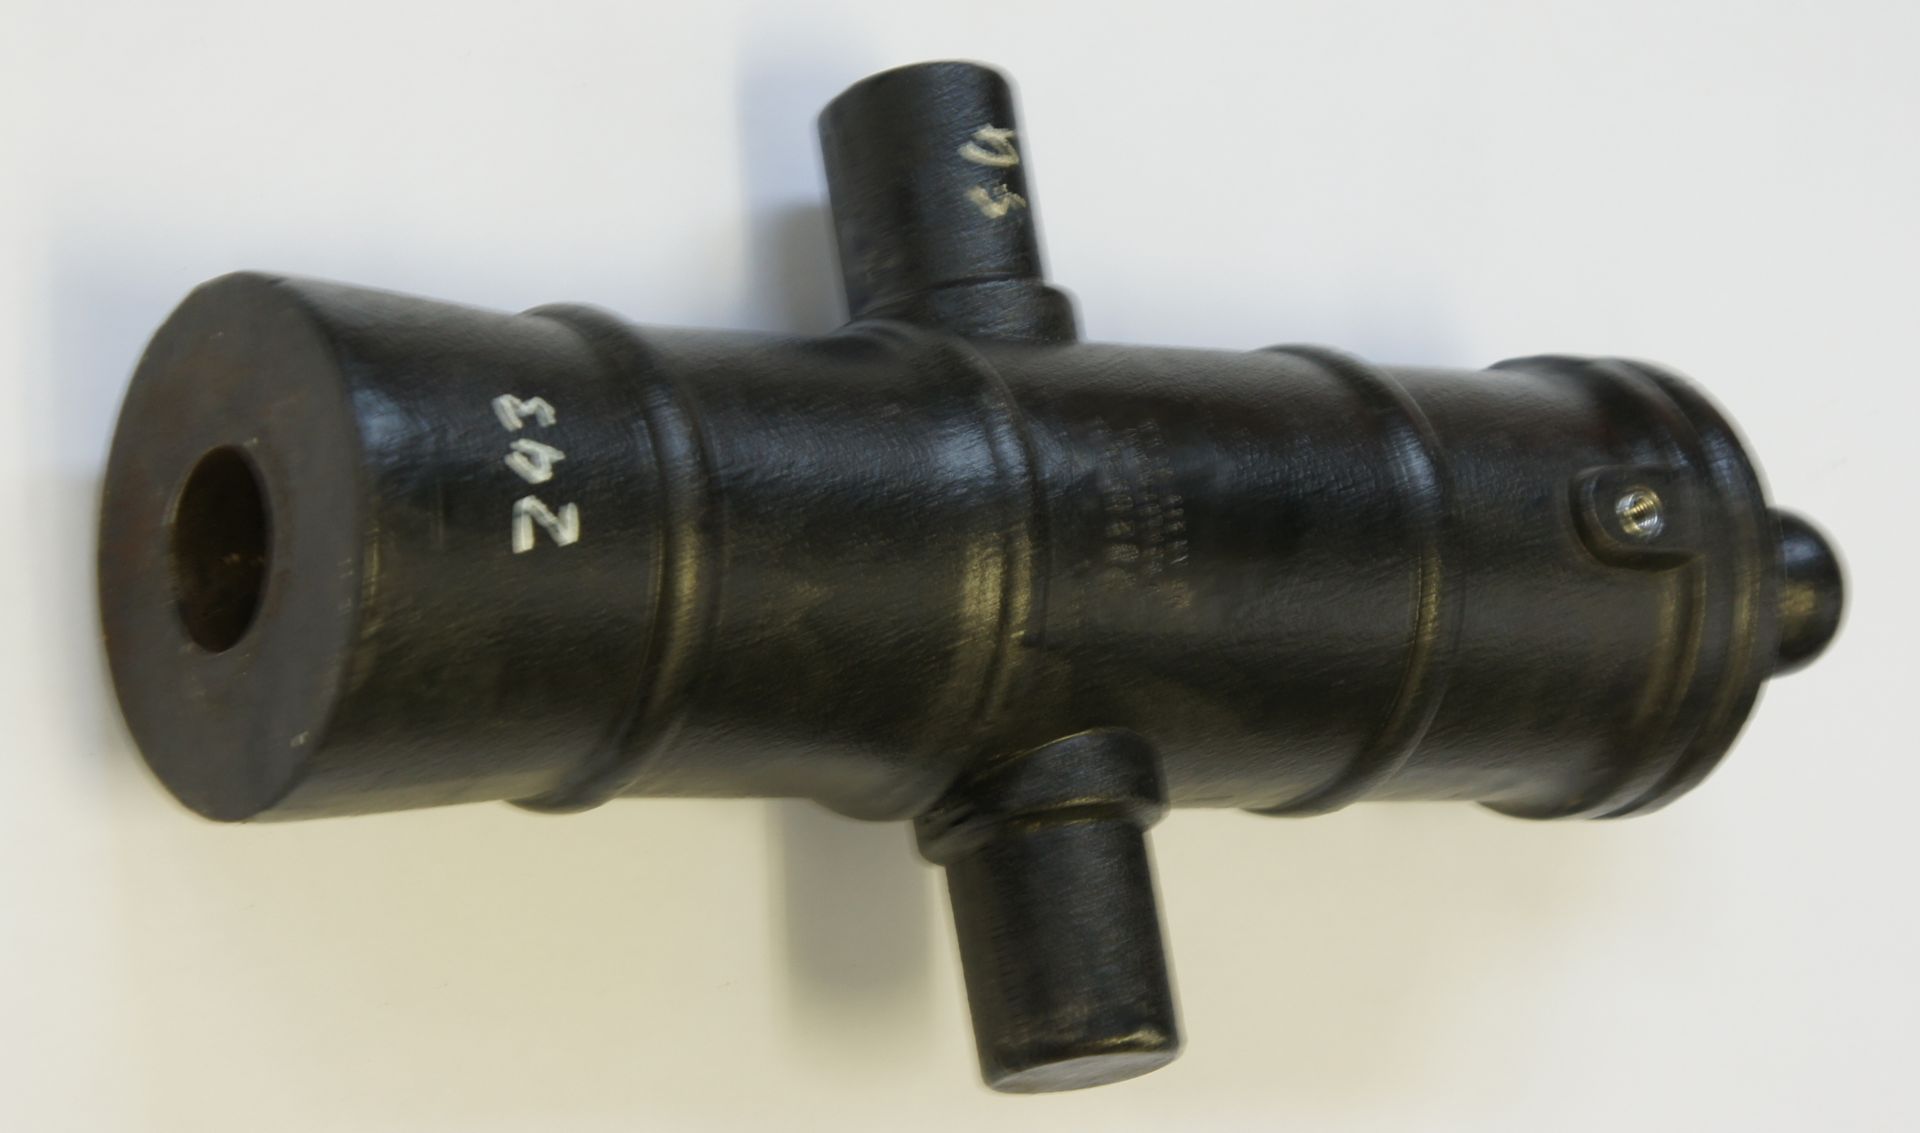 Das Kanonenrohr, Haubitze Kaliber 50mm sieht praktisch benau so aus, wie auf dem Bild, nur dass hier das äußerlich gleiche Rohr im Kaliber in 44mm zu sehen ist.